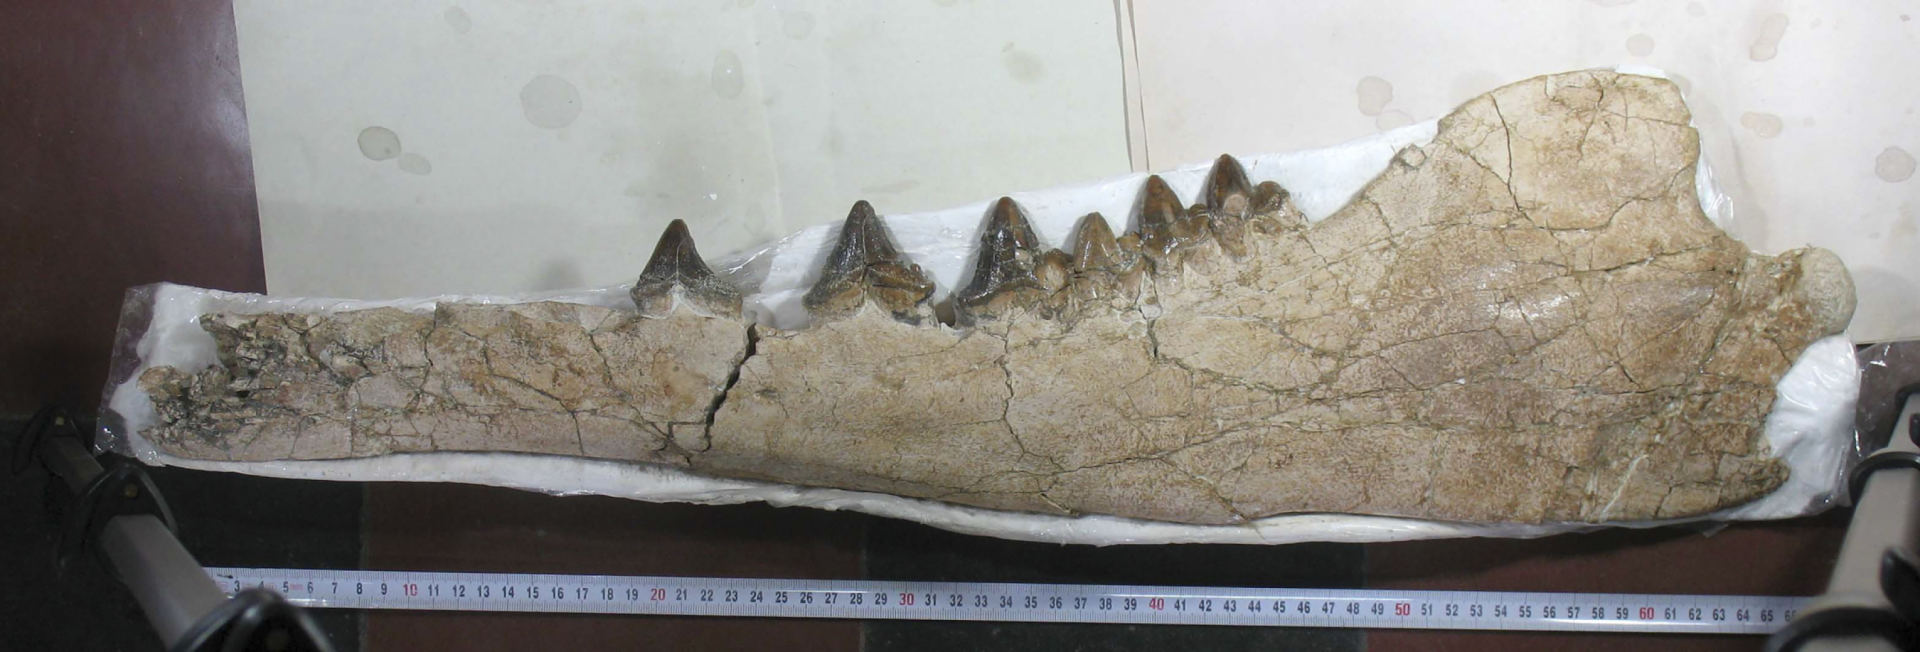 페루에서 발견된 물갈퀴발을 가진 네발 선사시대 고래 화석 2